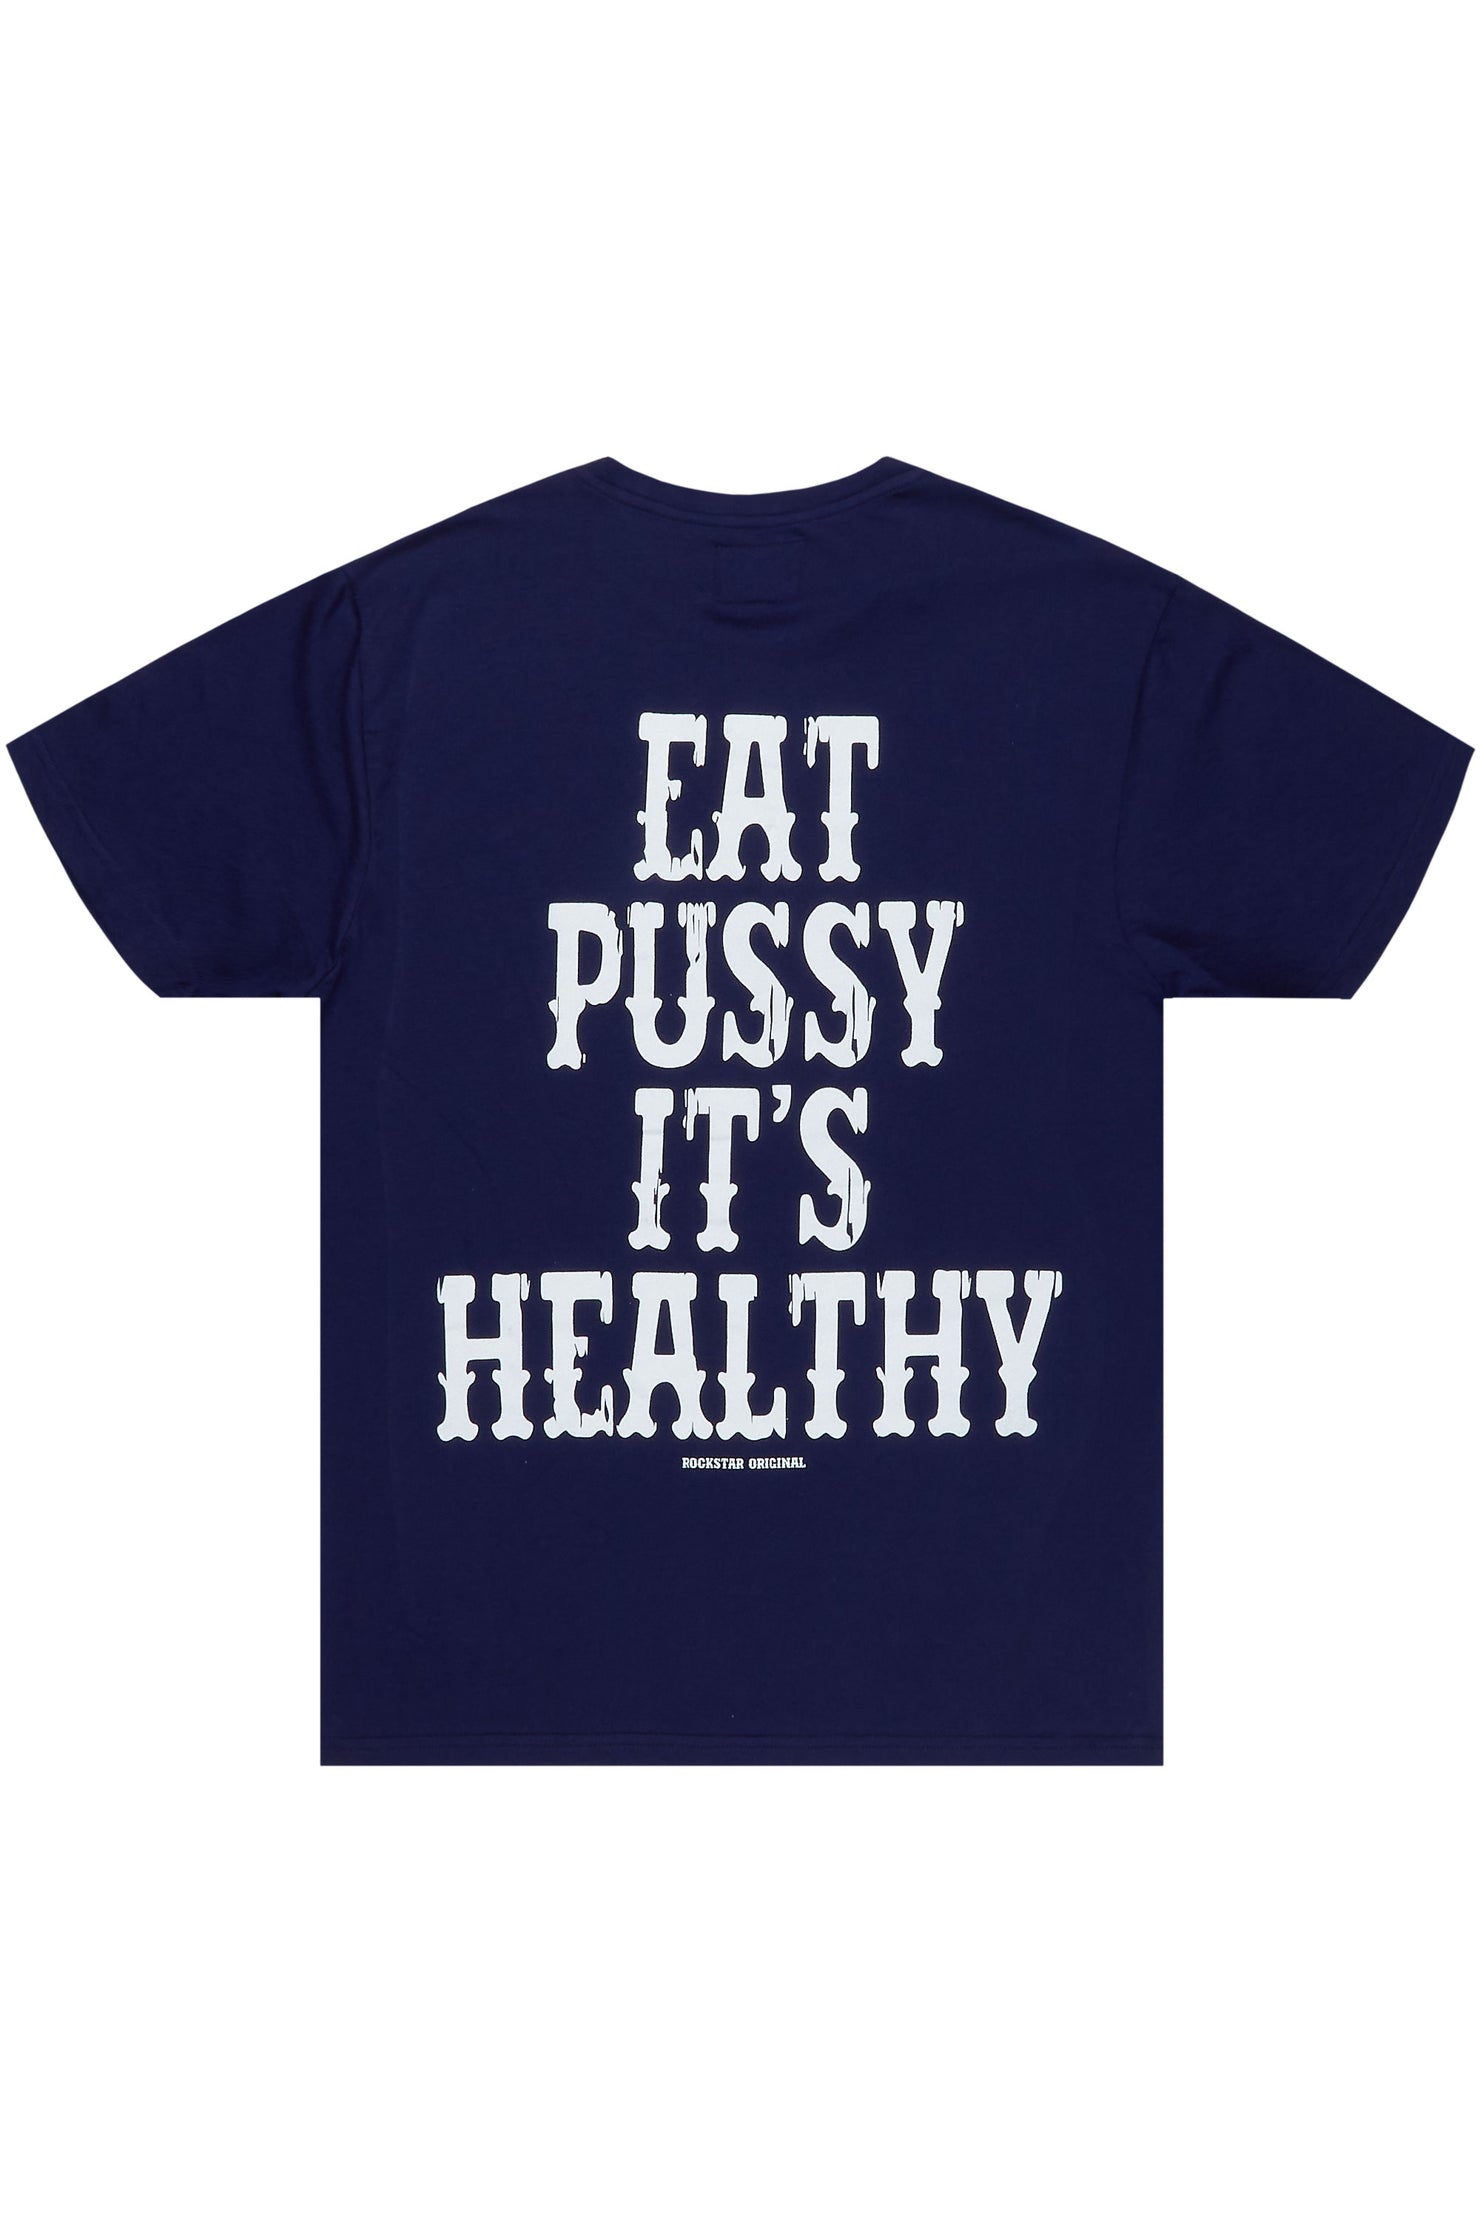 Posse Navy Graphic T-Shirt